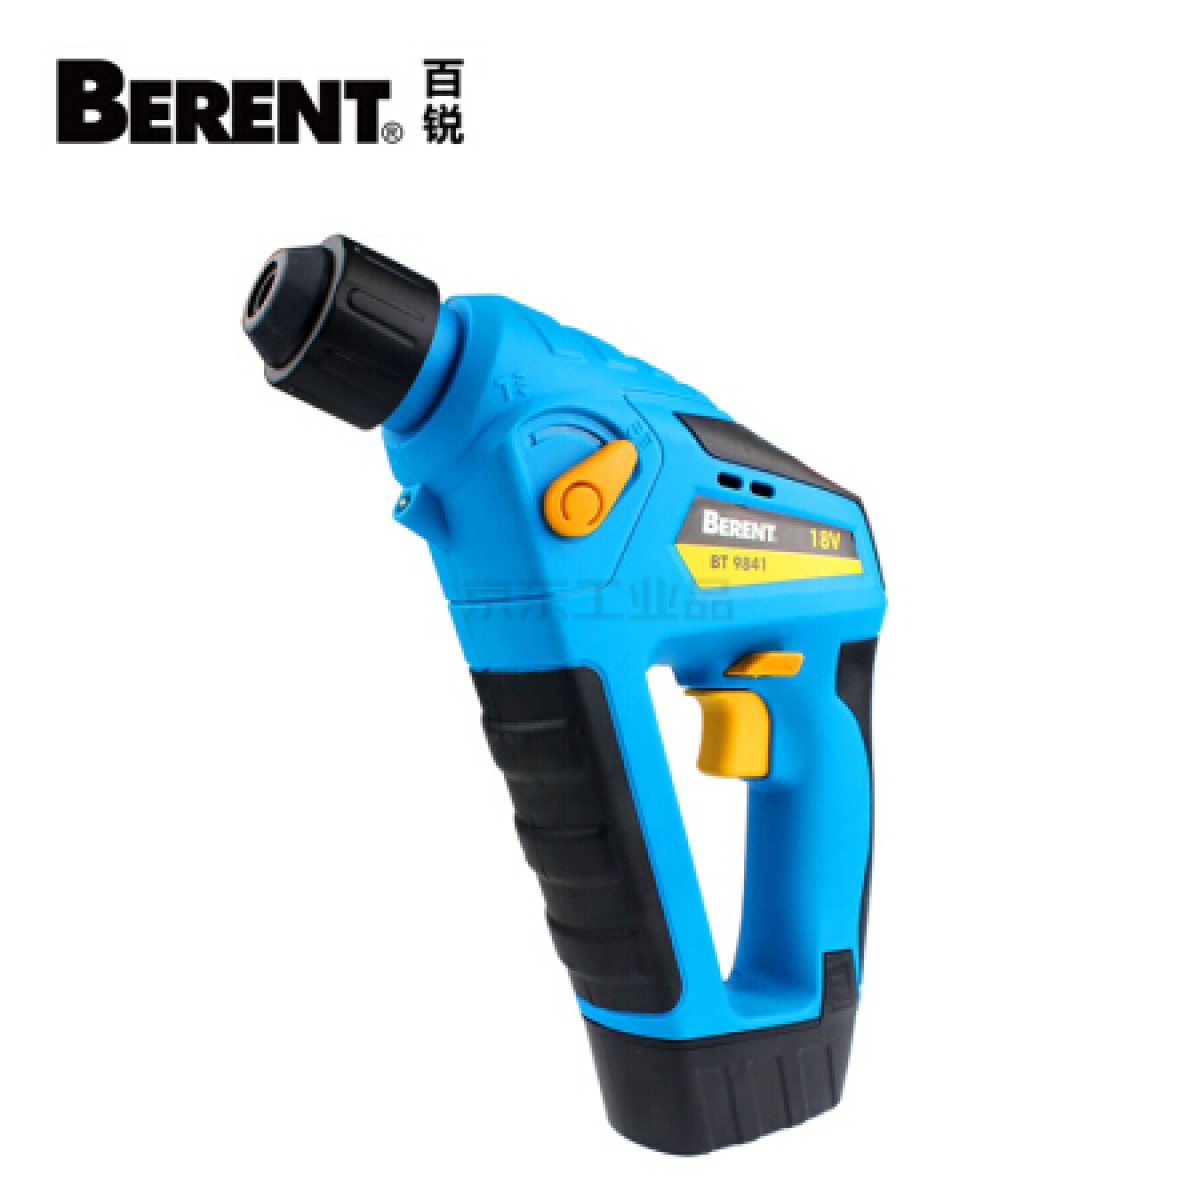 百锐工具(BERENT) 锂电电锤,18V；BT9841